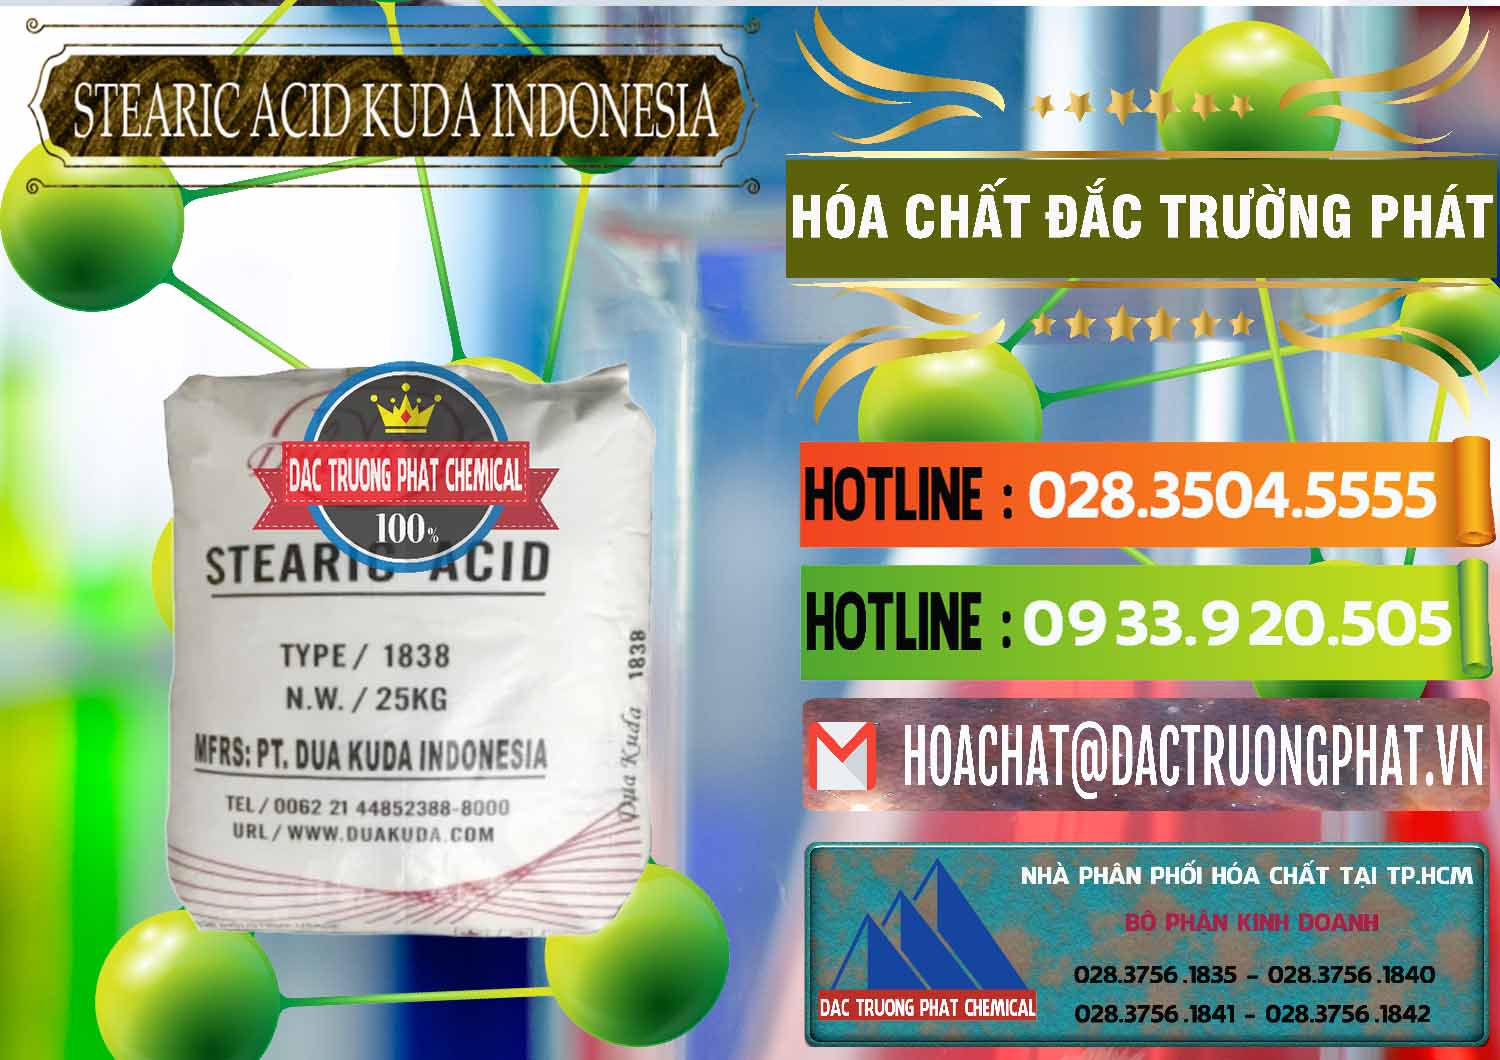 Cty cung ứng và bán Axit Stearic - Stearic Acid Dua Kuda Indonesia - 0388 - Cung cấp ( phân phối ) hóa chất tại TP.HCM - cungcaphoachat.com.vn